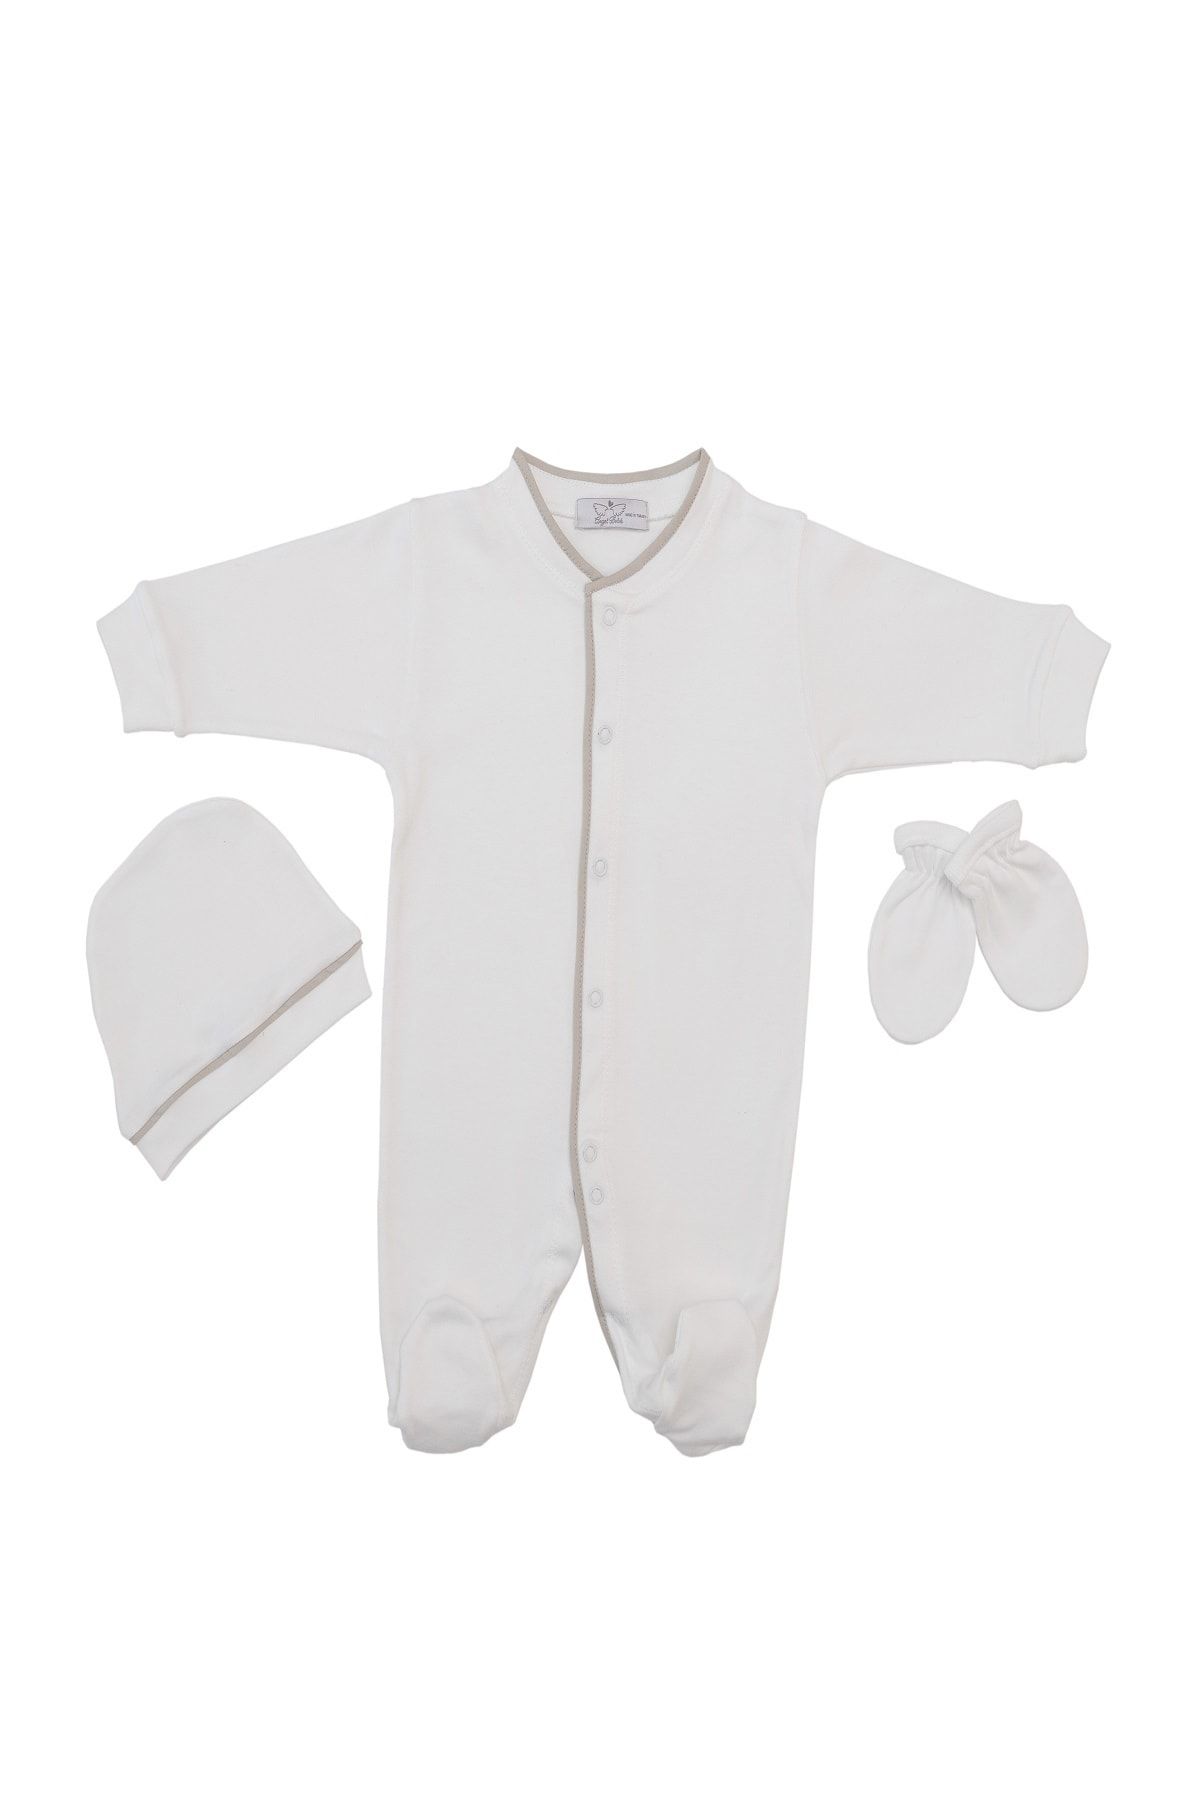 AngelButik Unisex Bebek Beyaz Biye Detaylı Organik Tulum Seti